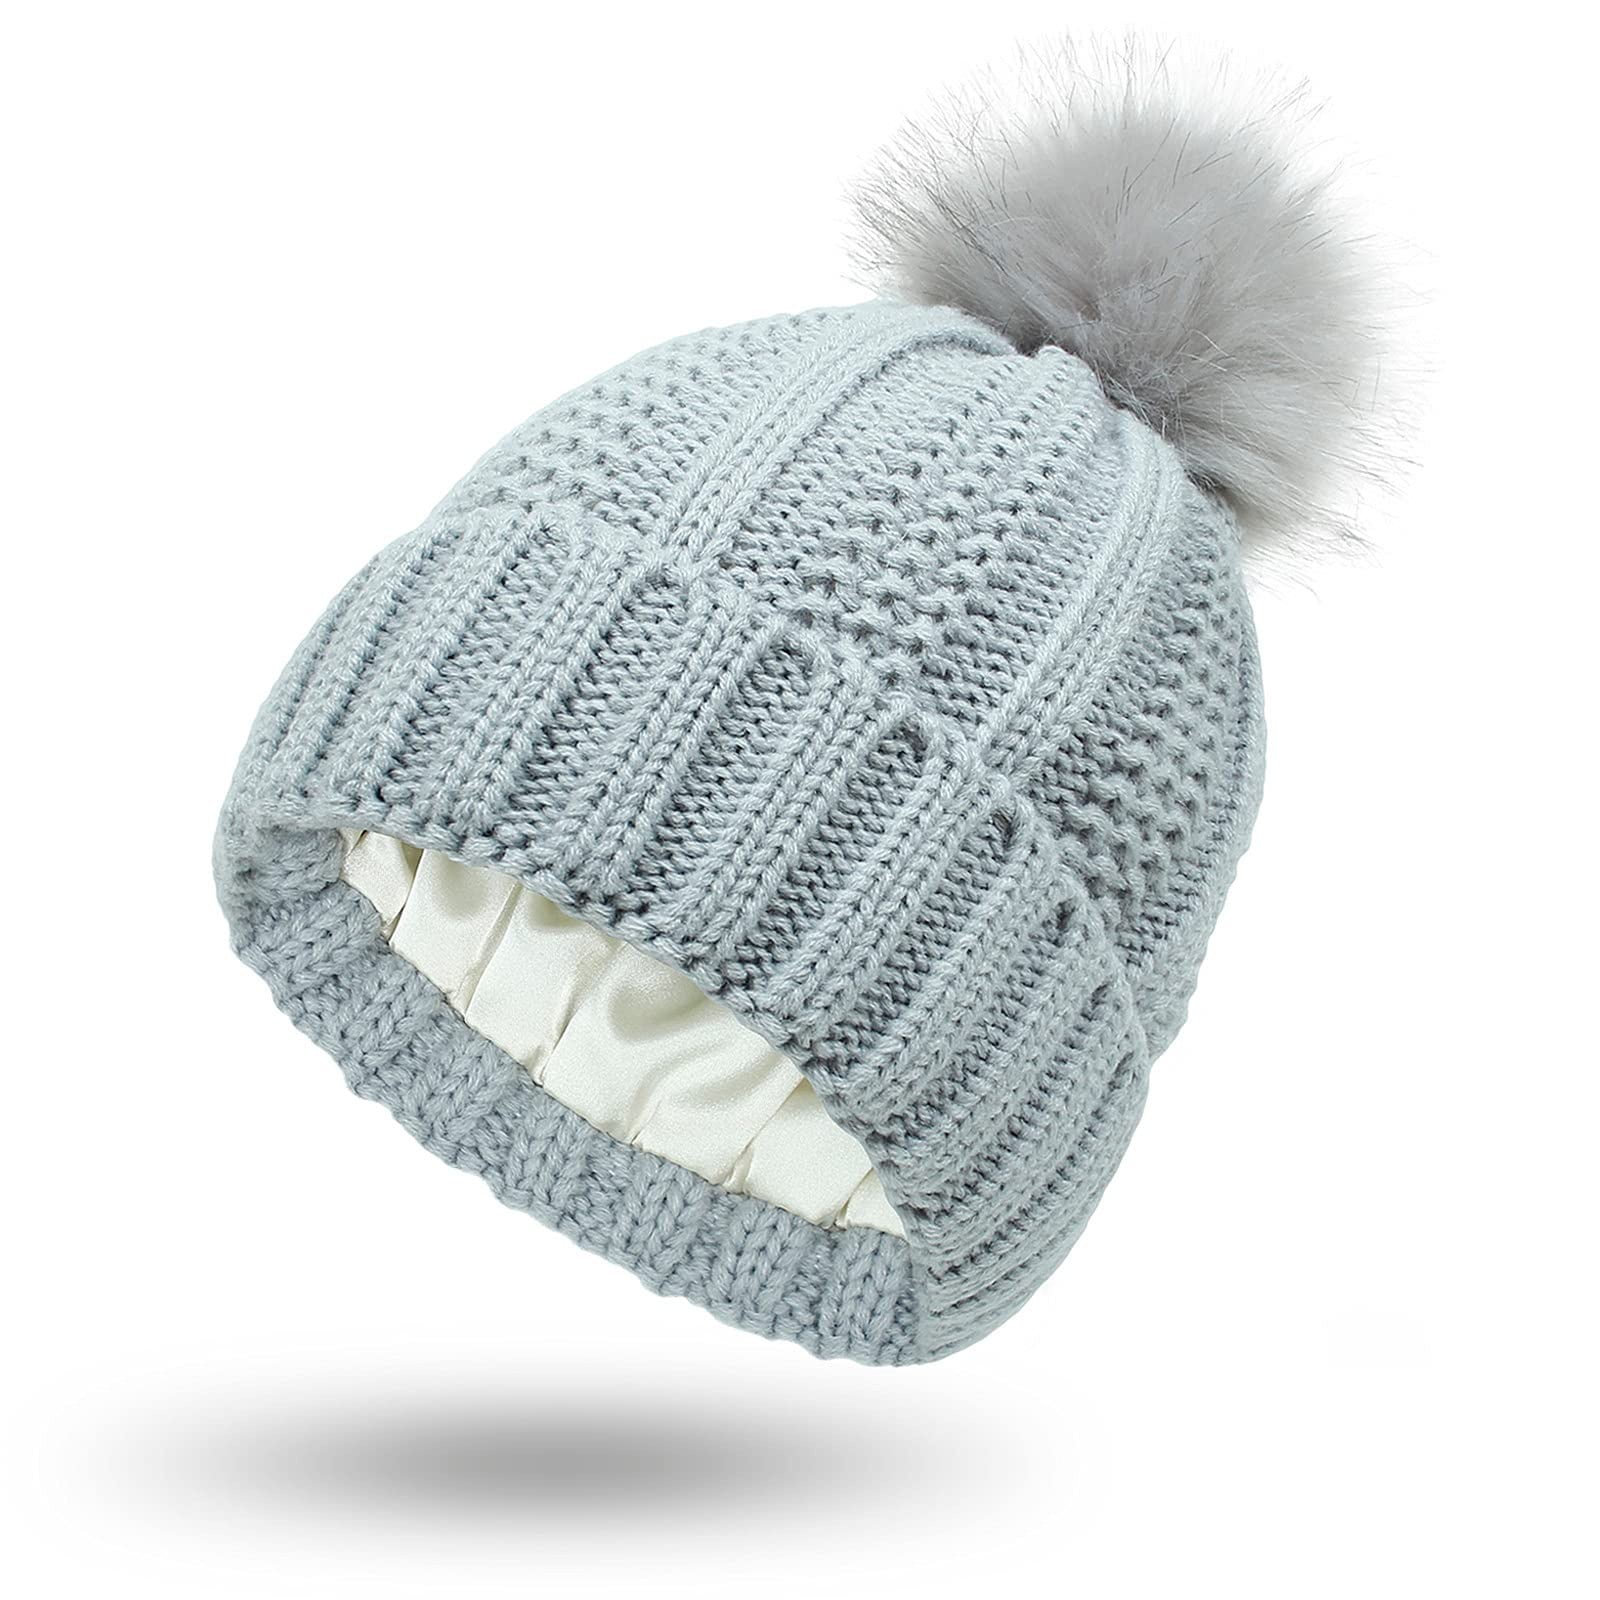 Fashion Knit Beanie Pom Pom Hat, SKU: H112-GRY